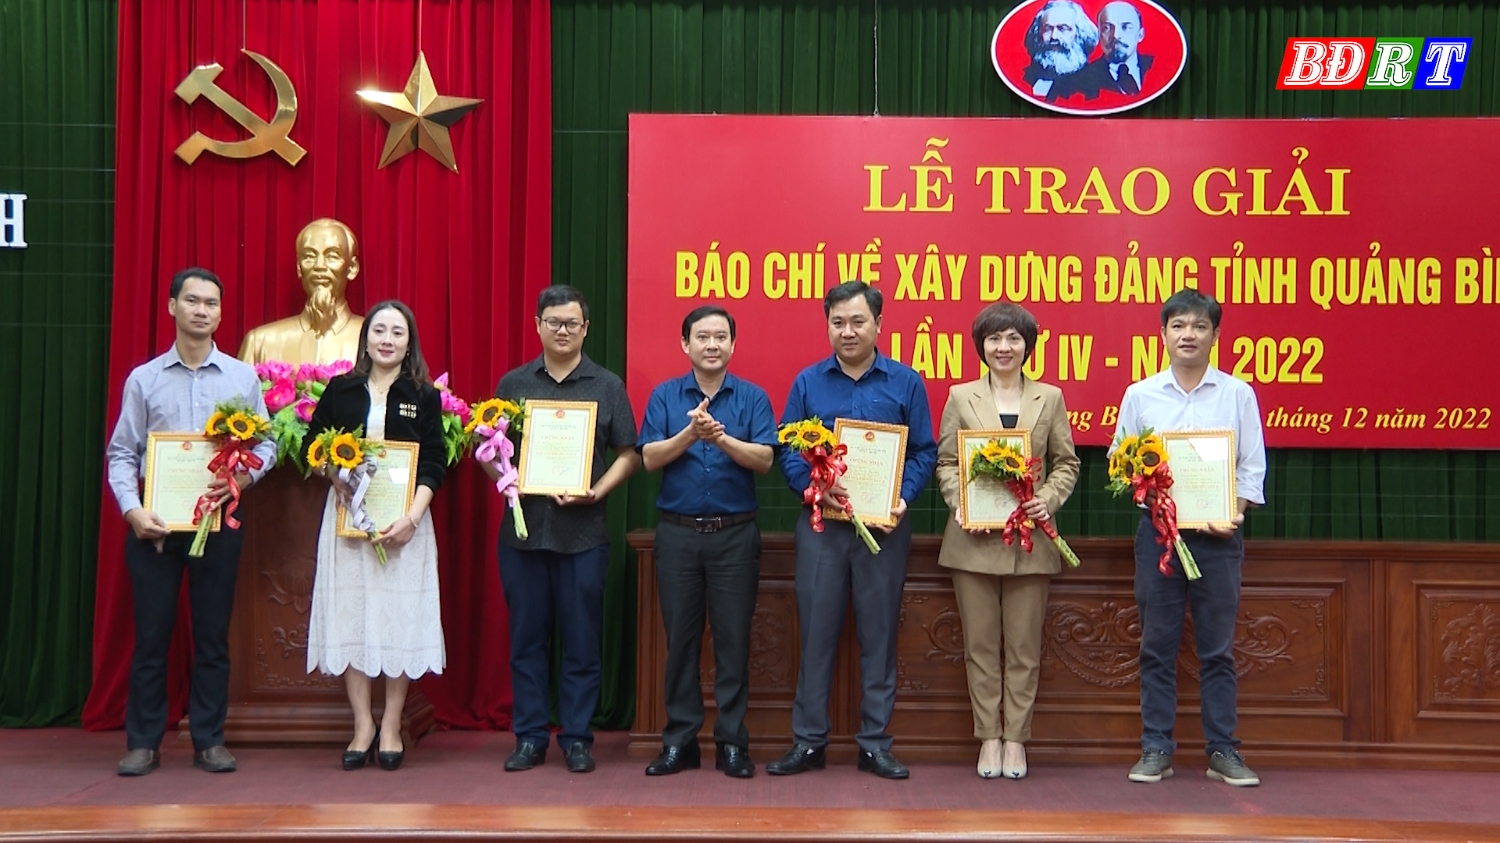 Đội ngũ cán bộ phóng viên đạt nhiều thành tích trong cuộc thi Báo chí xây dựng Đảng